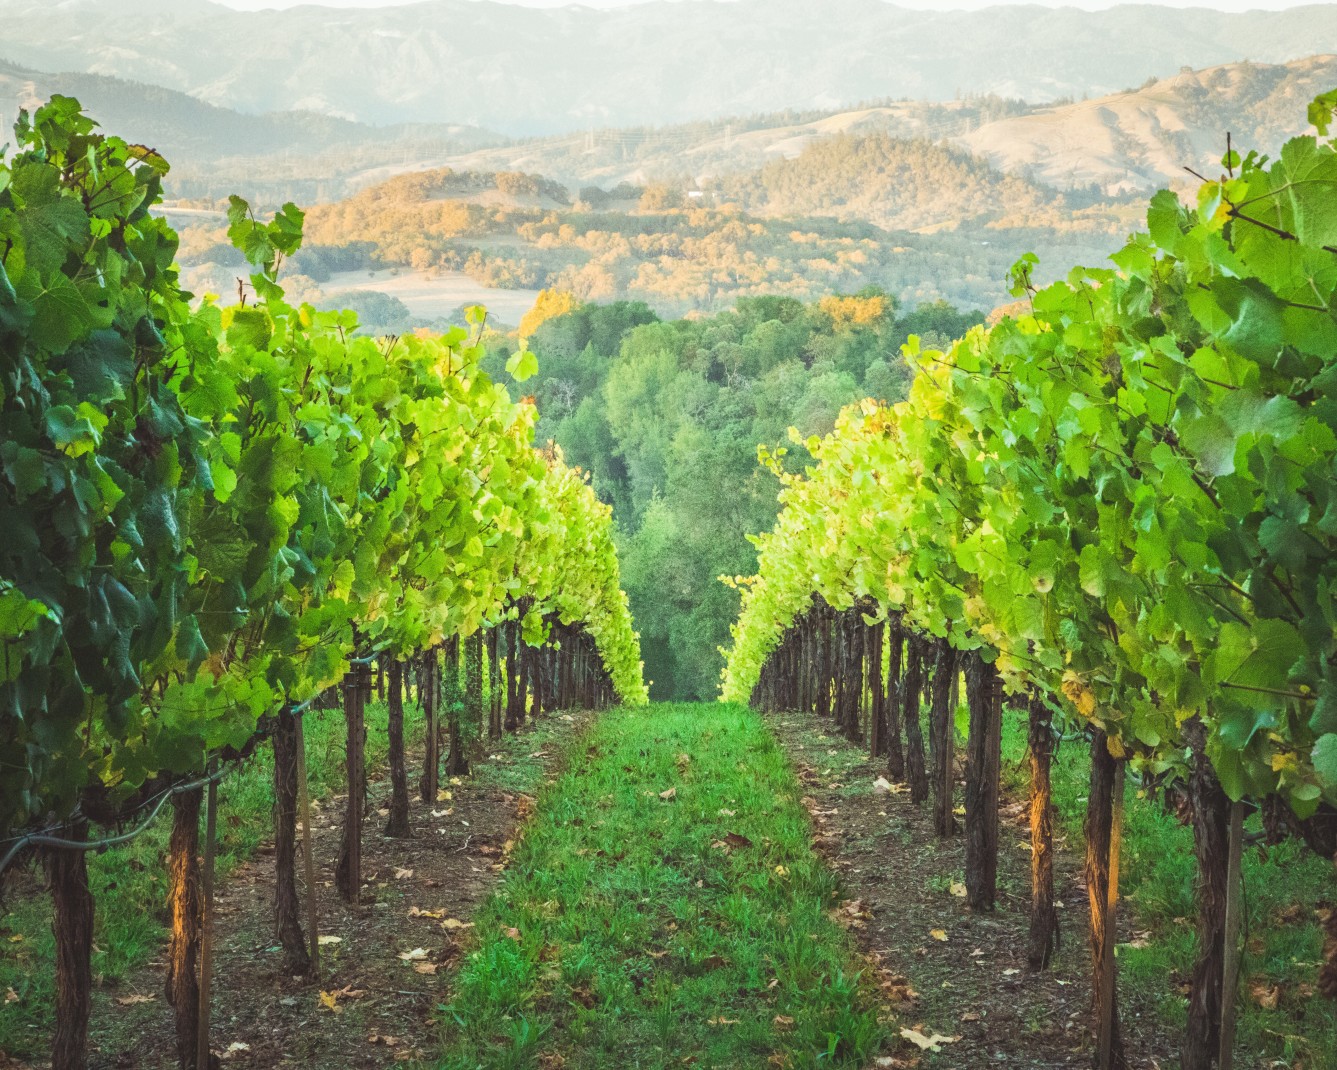 Vineyard overlooking mountains during daytime